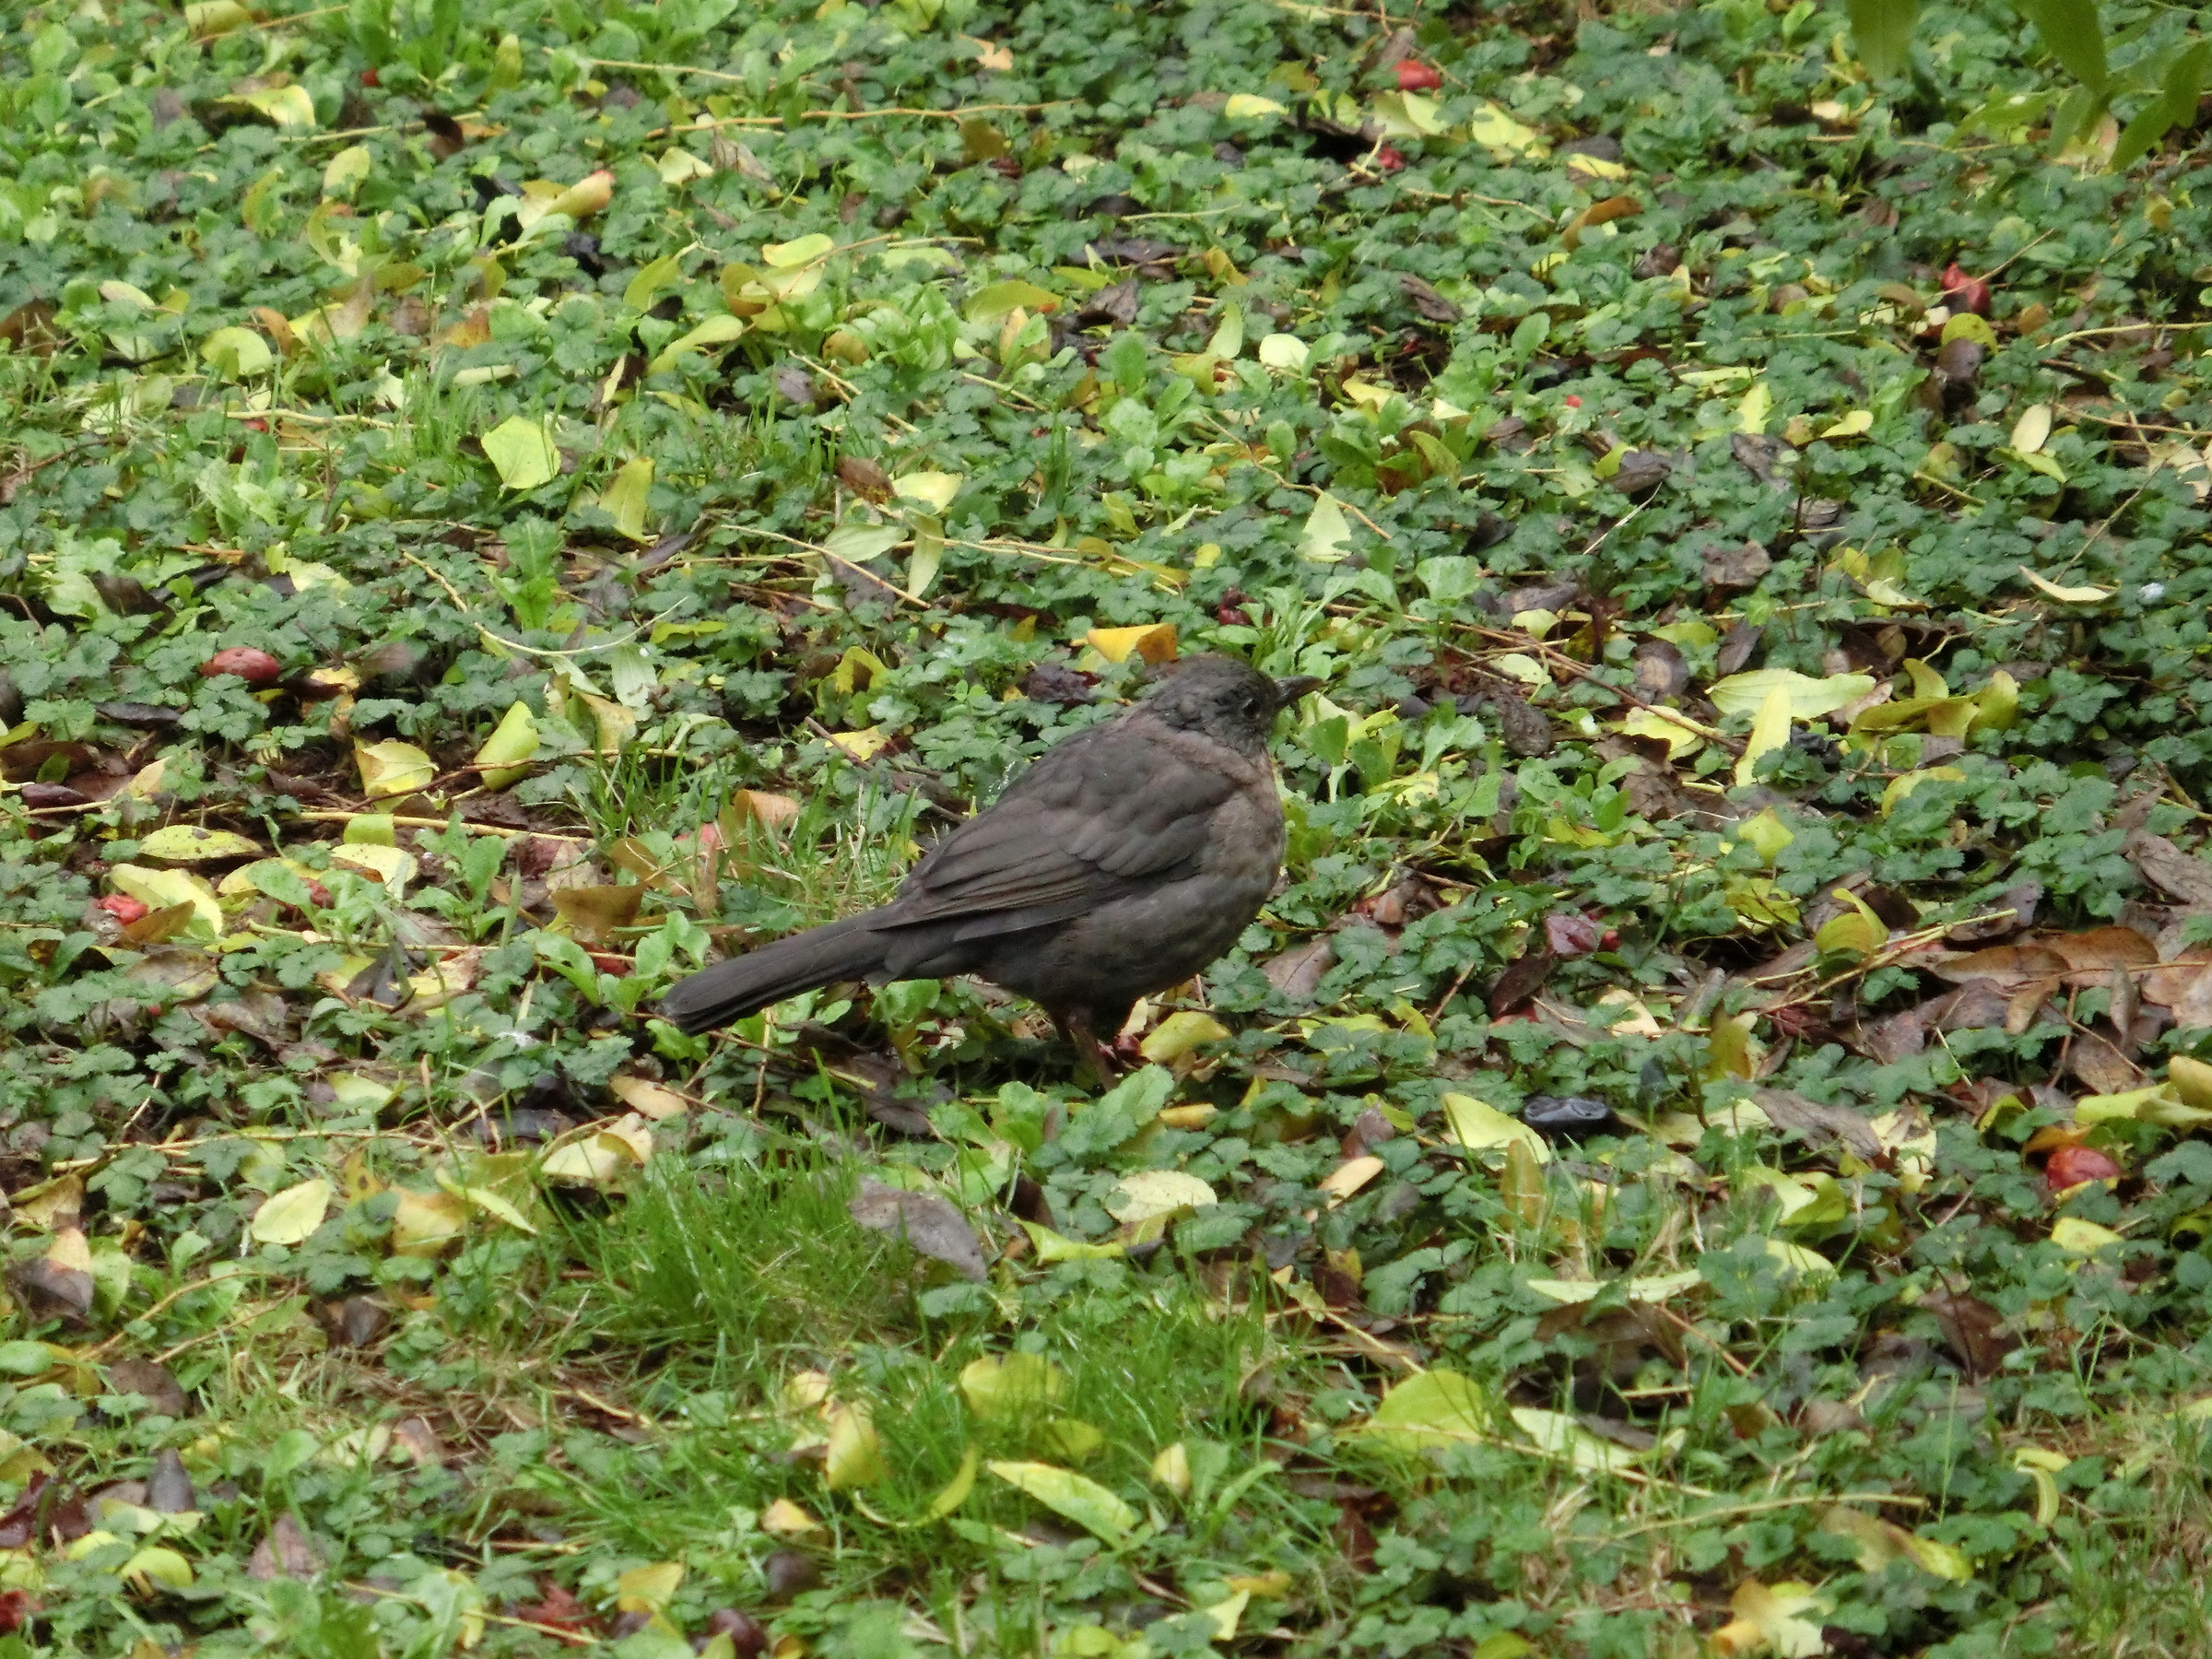 The blackbird undisturbed...